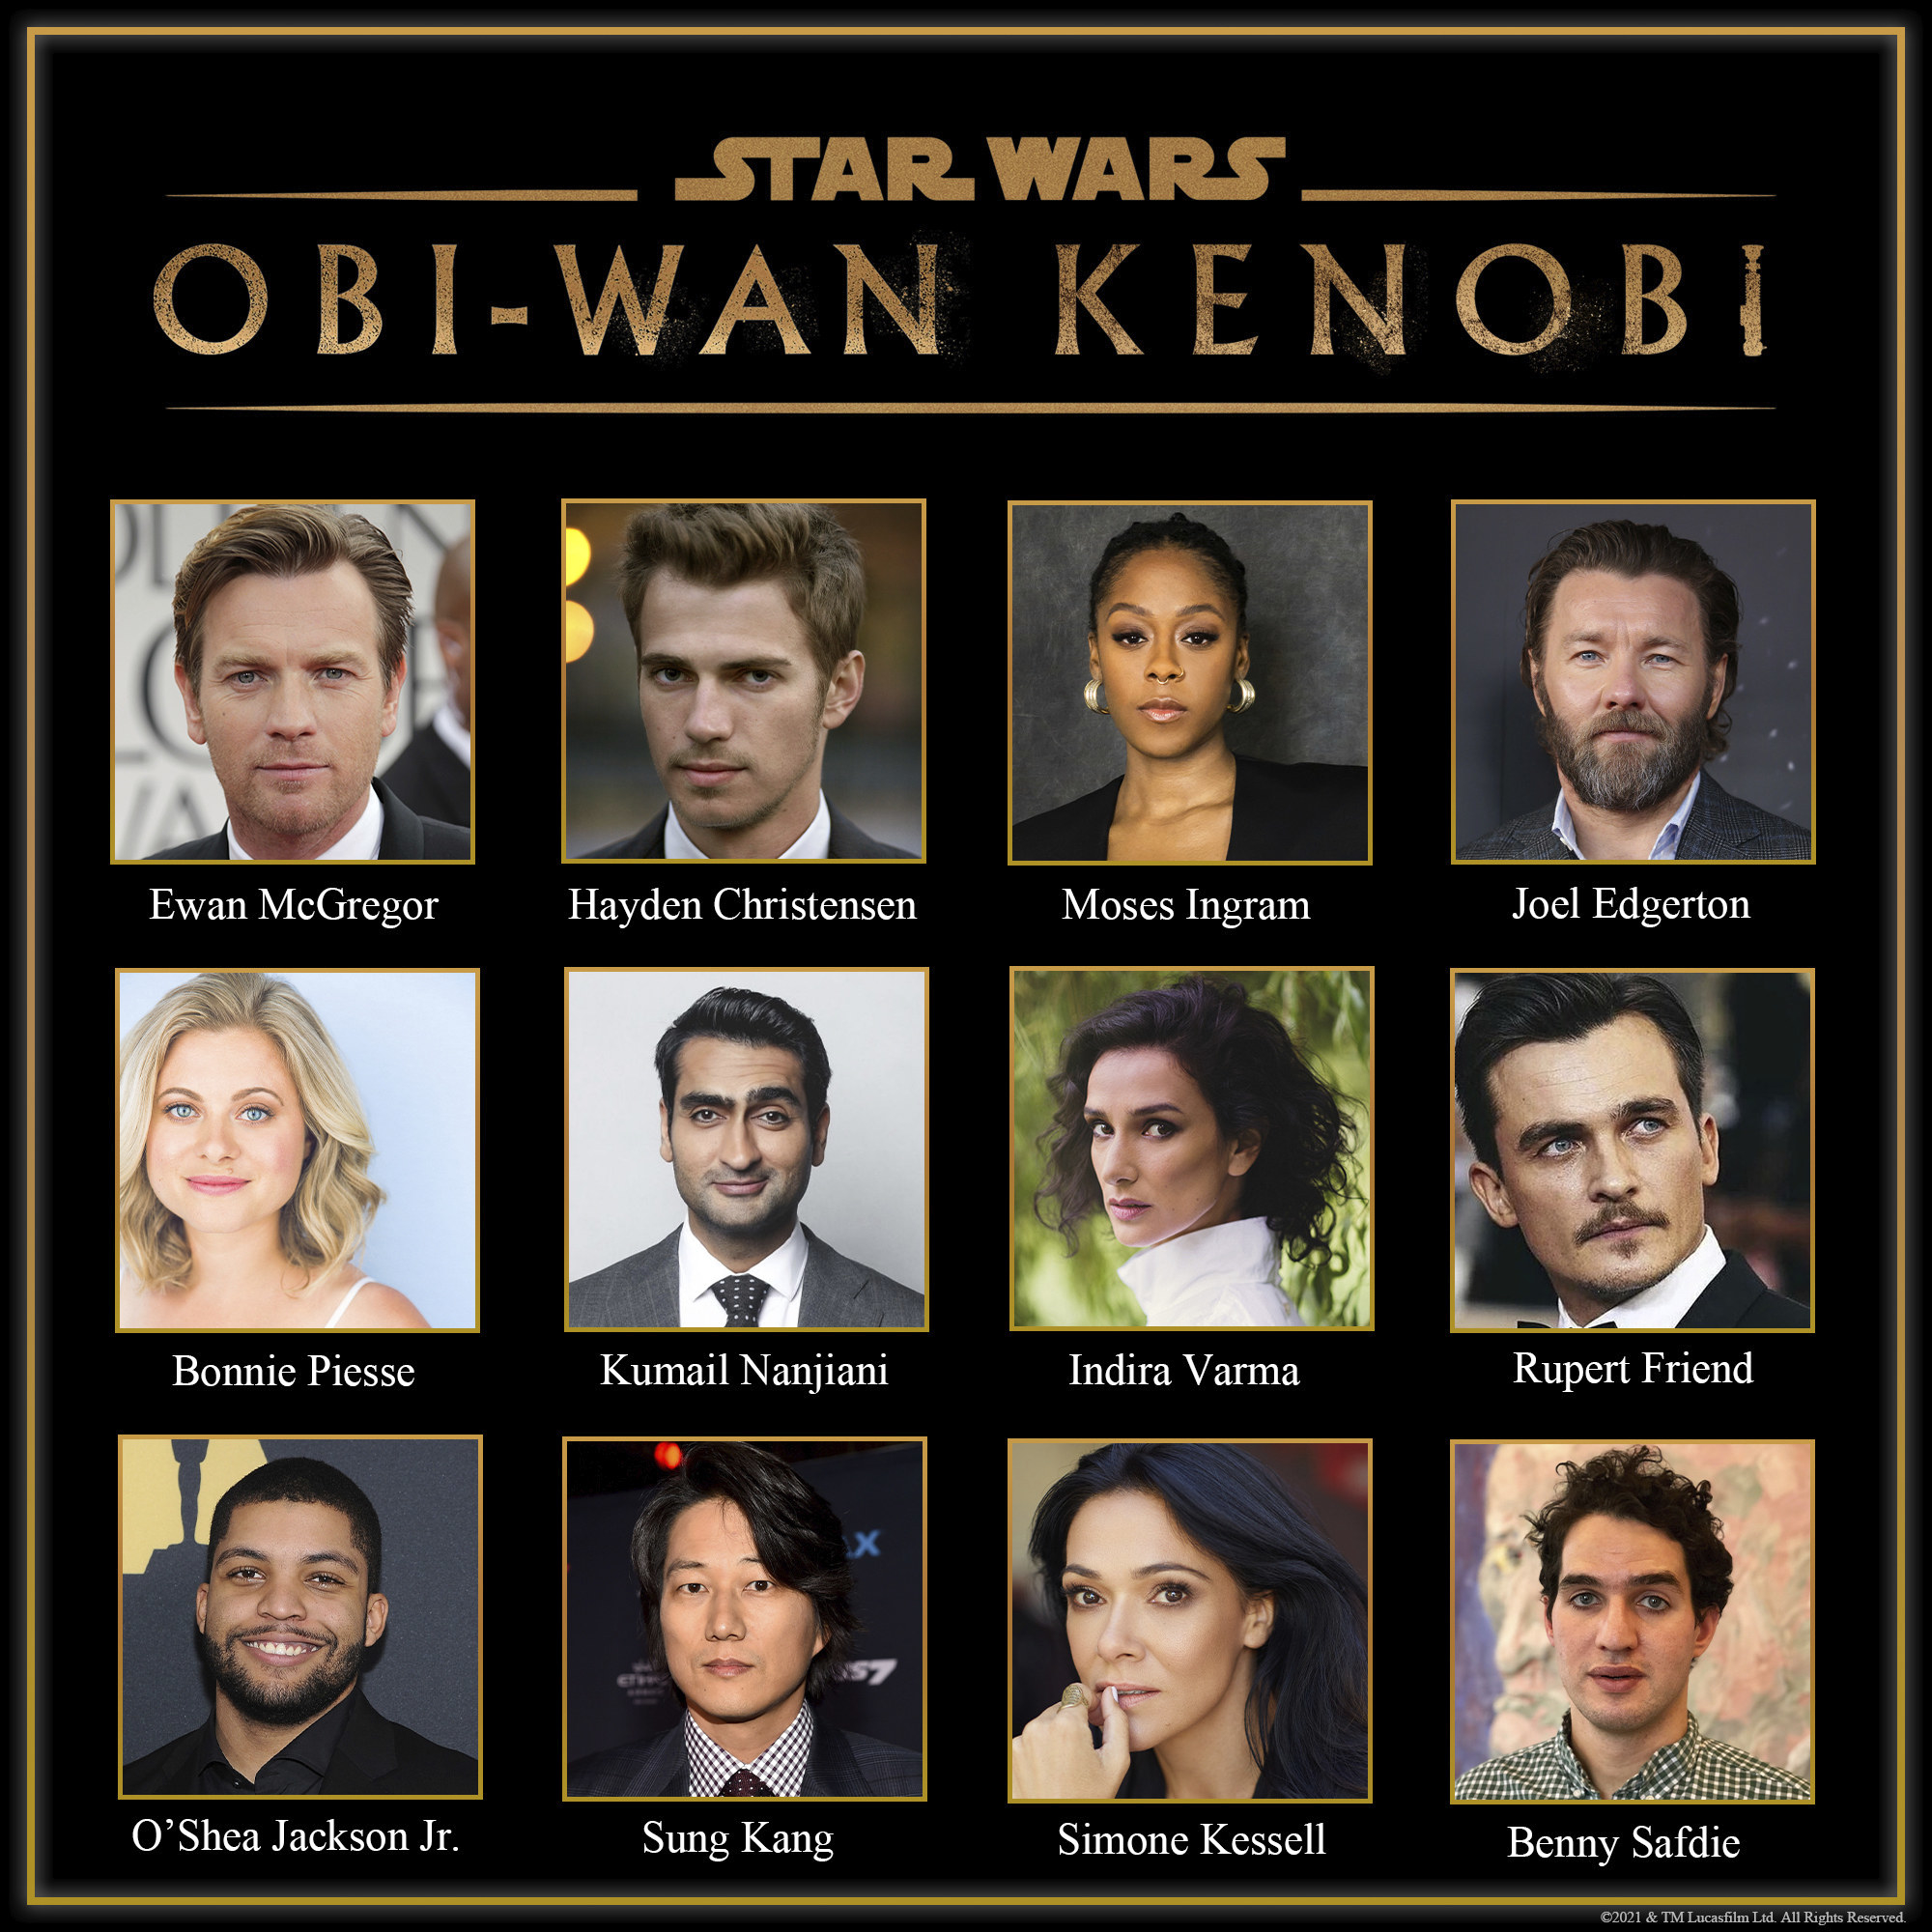 The castlist of Obi-Wan Kenobi